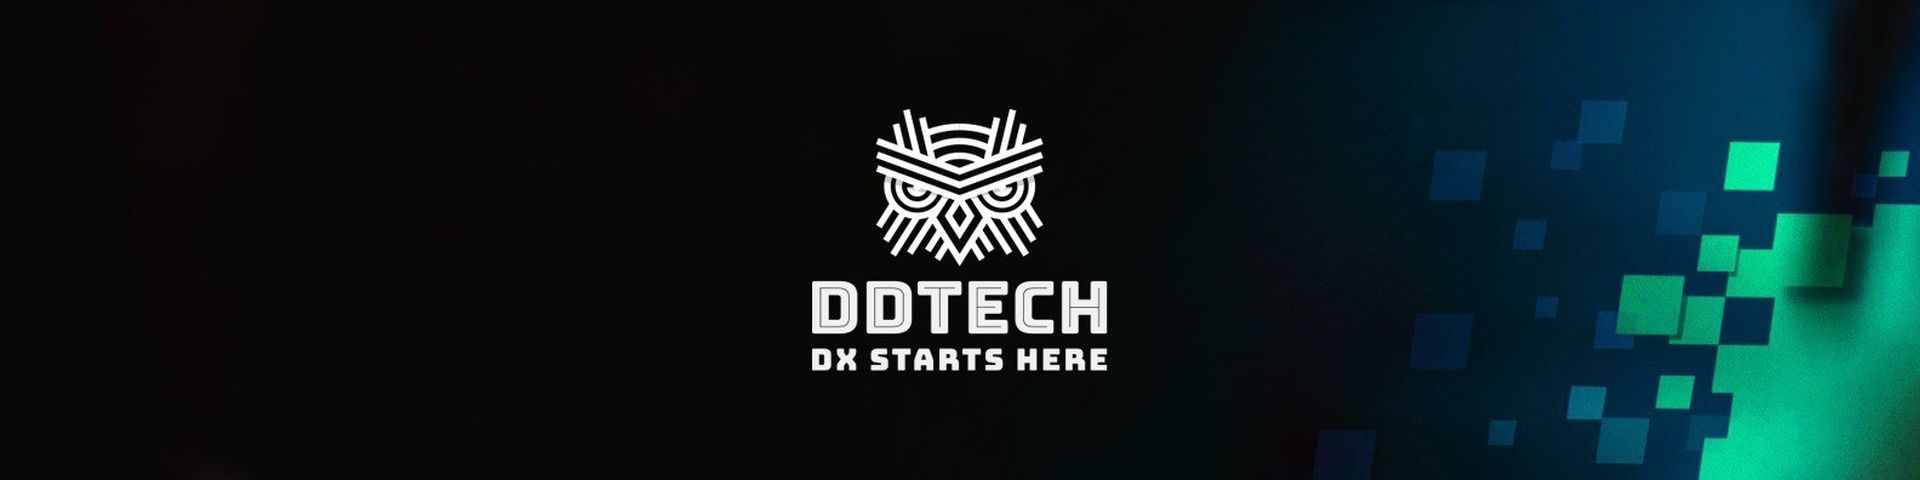 DDTECH, Azerbaycan'ın dijital dönüşümüne destek olacak